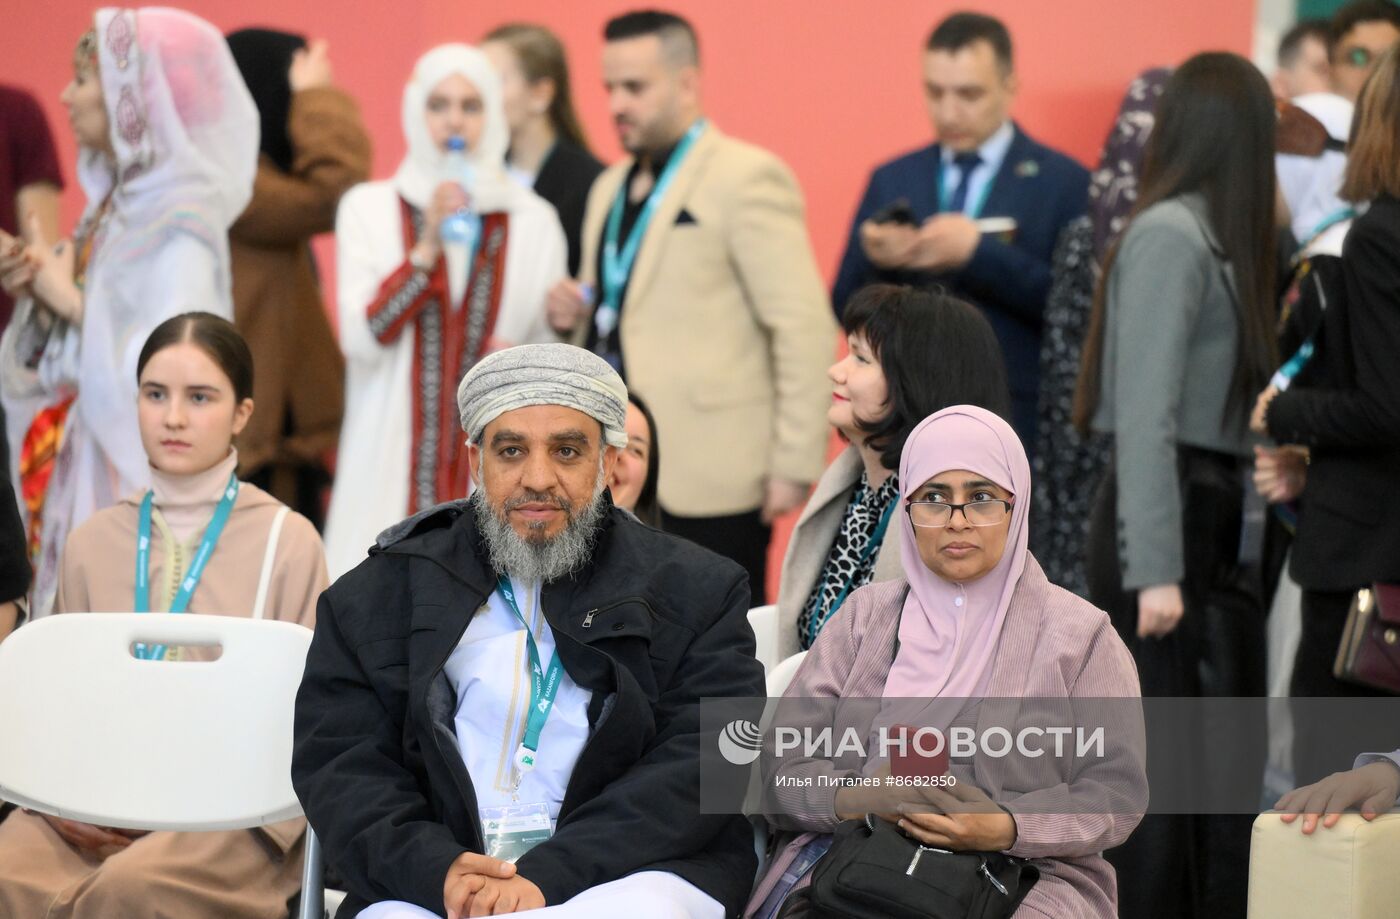 Работа форума "Россия - исламский мир: KAZANFORUM" 2024